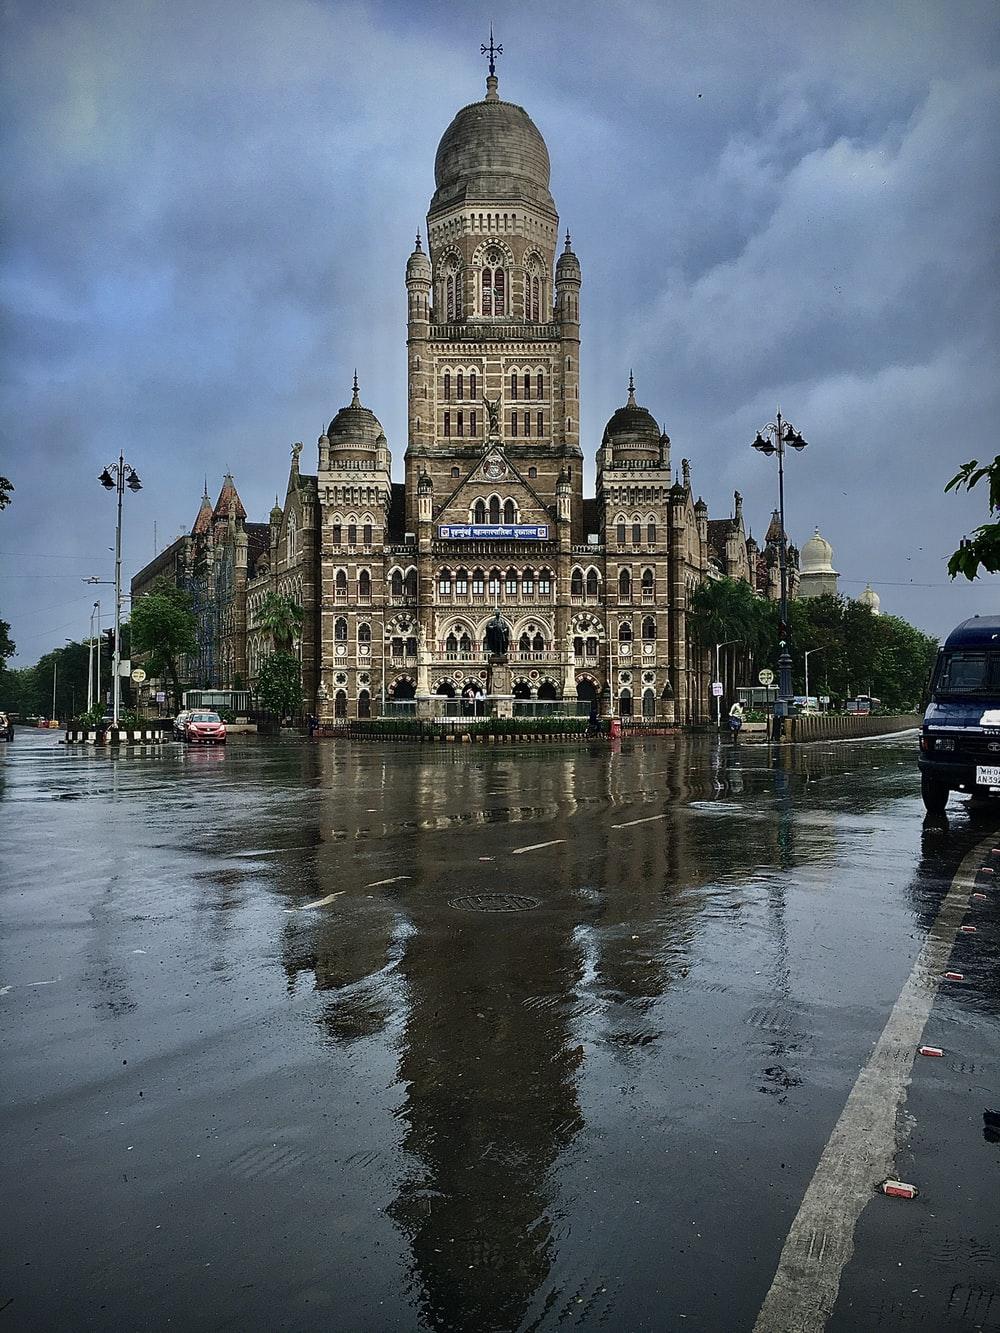 Stunning Mumbai Picture [HD]. Download Free Image